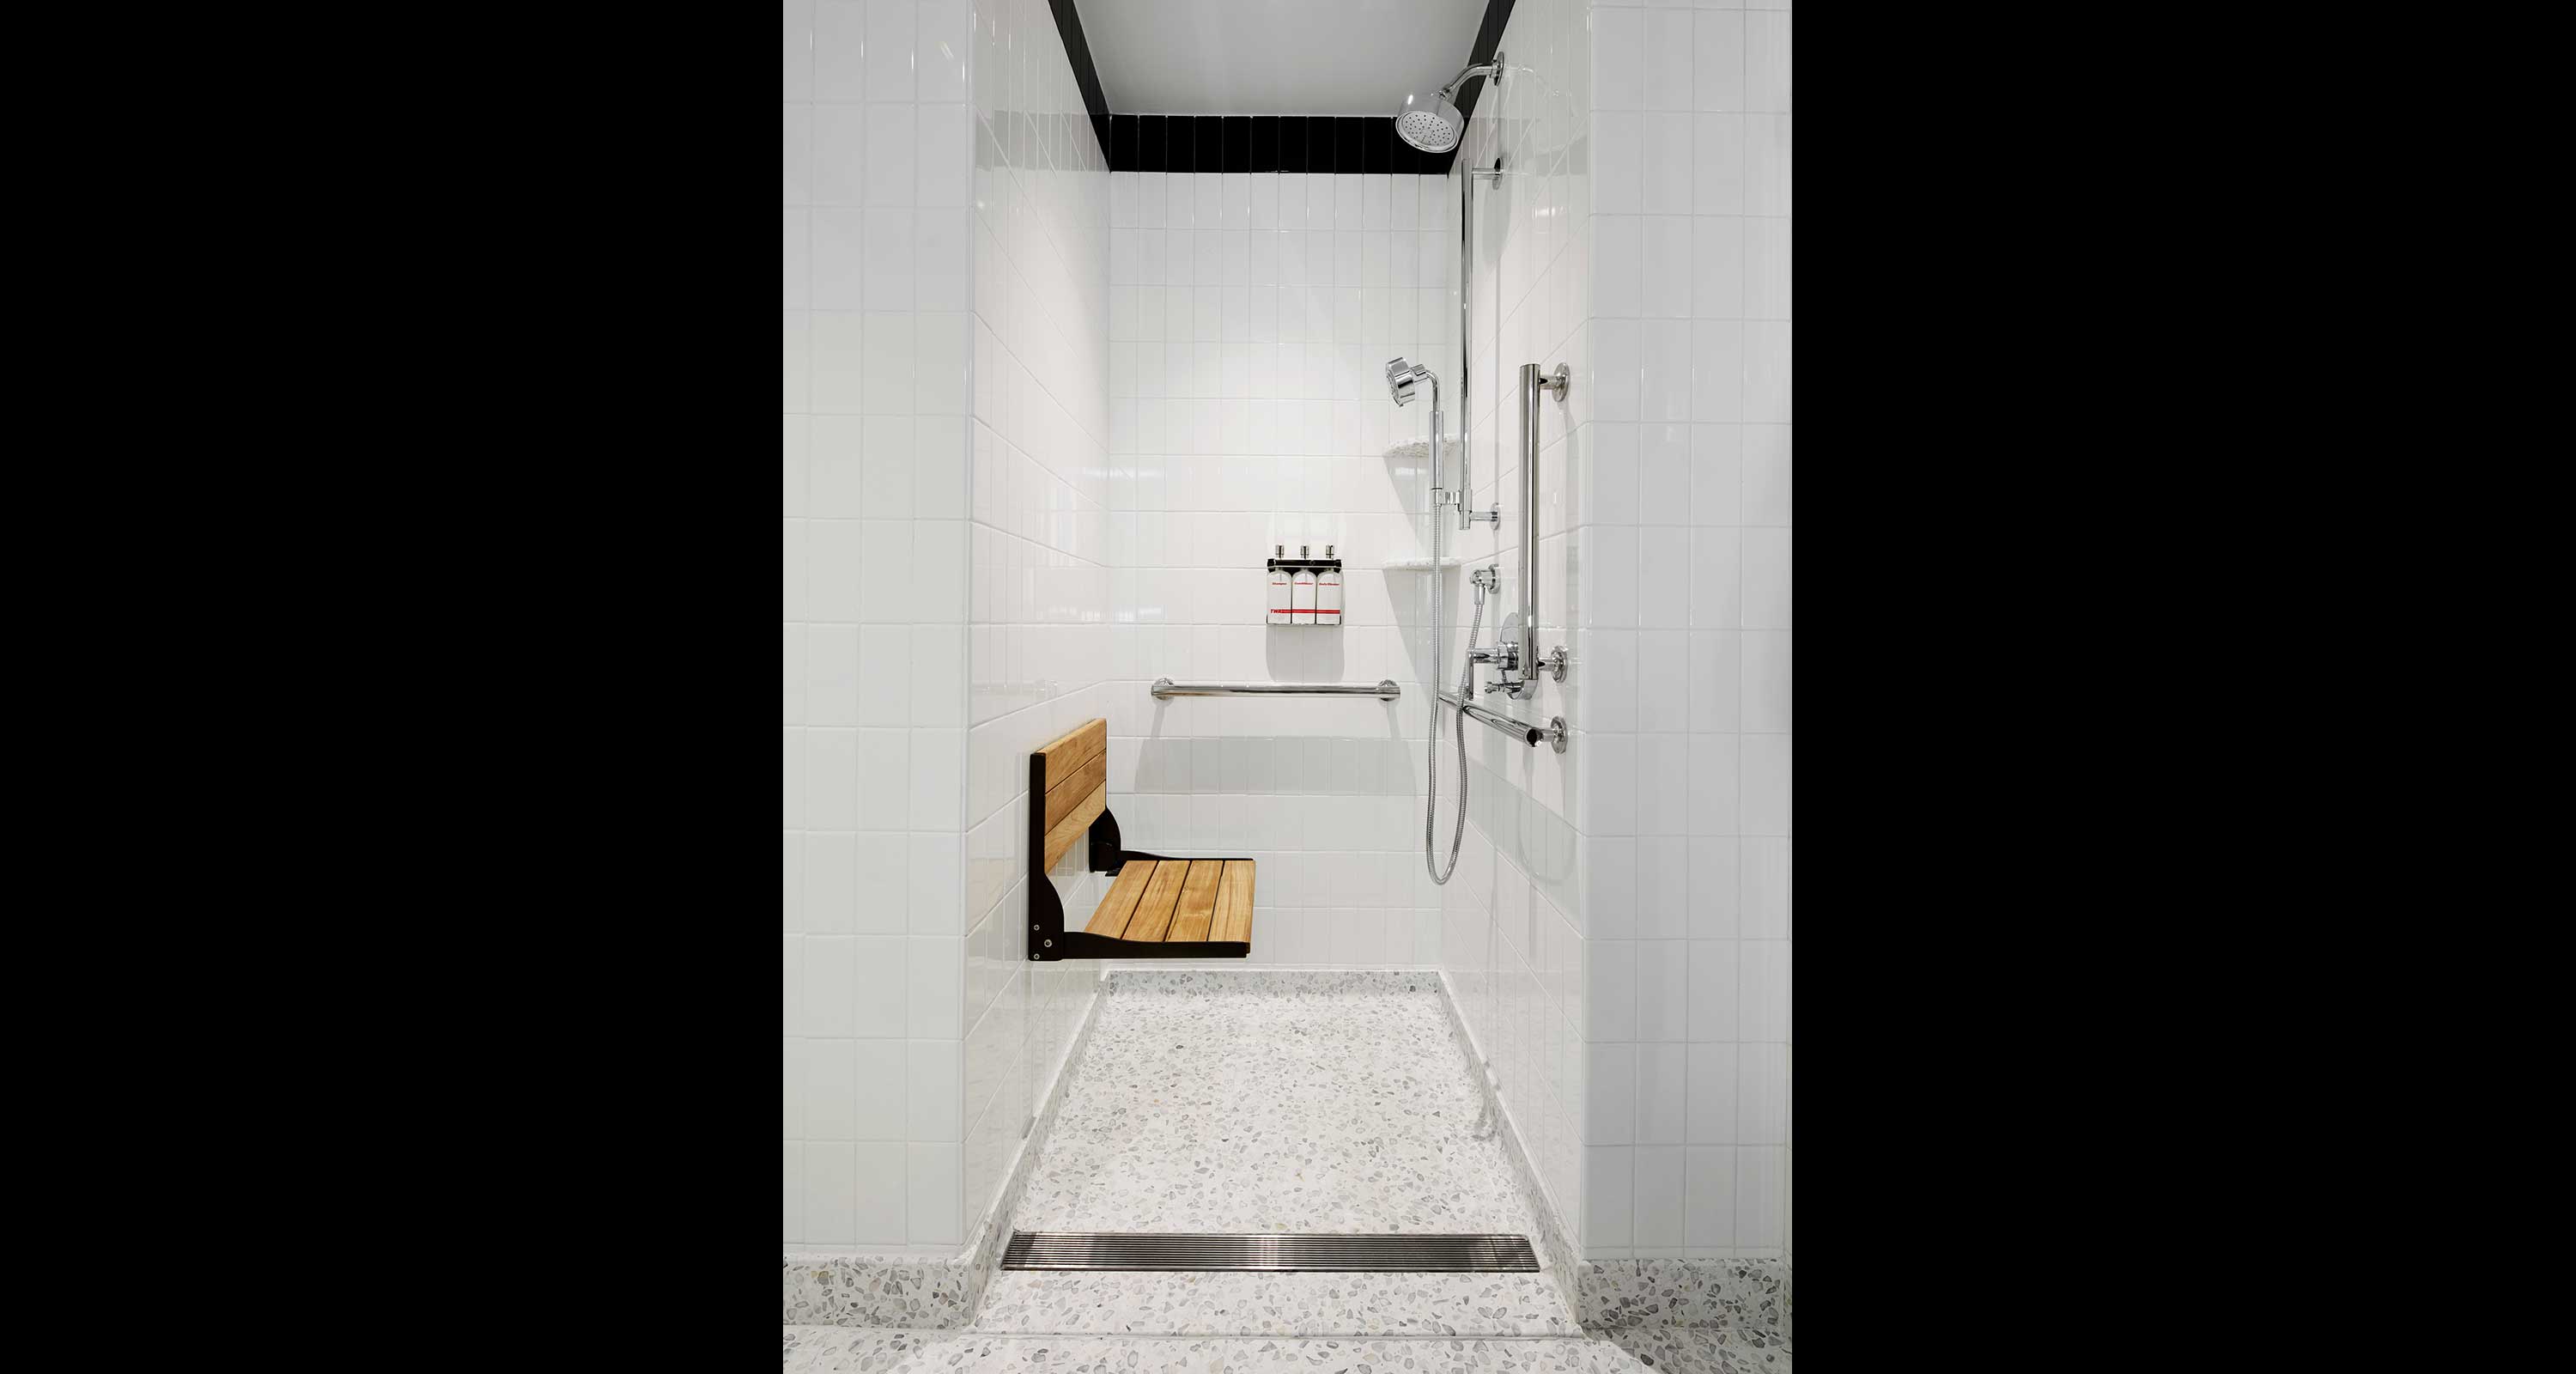 Accessible guestroom bathroom